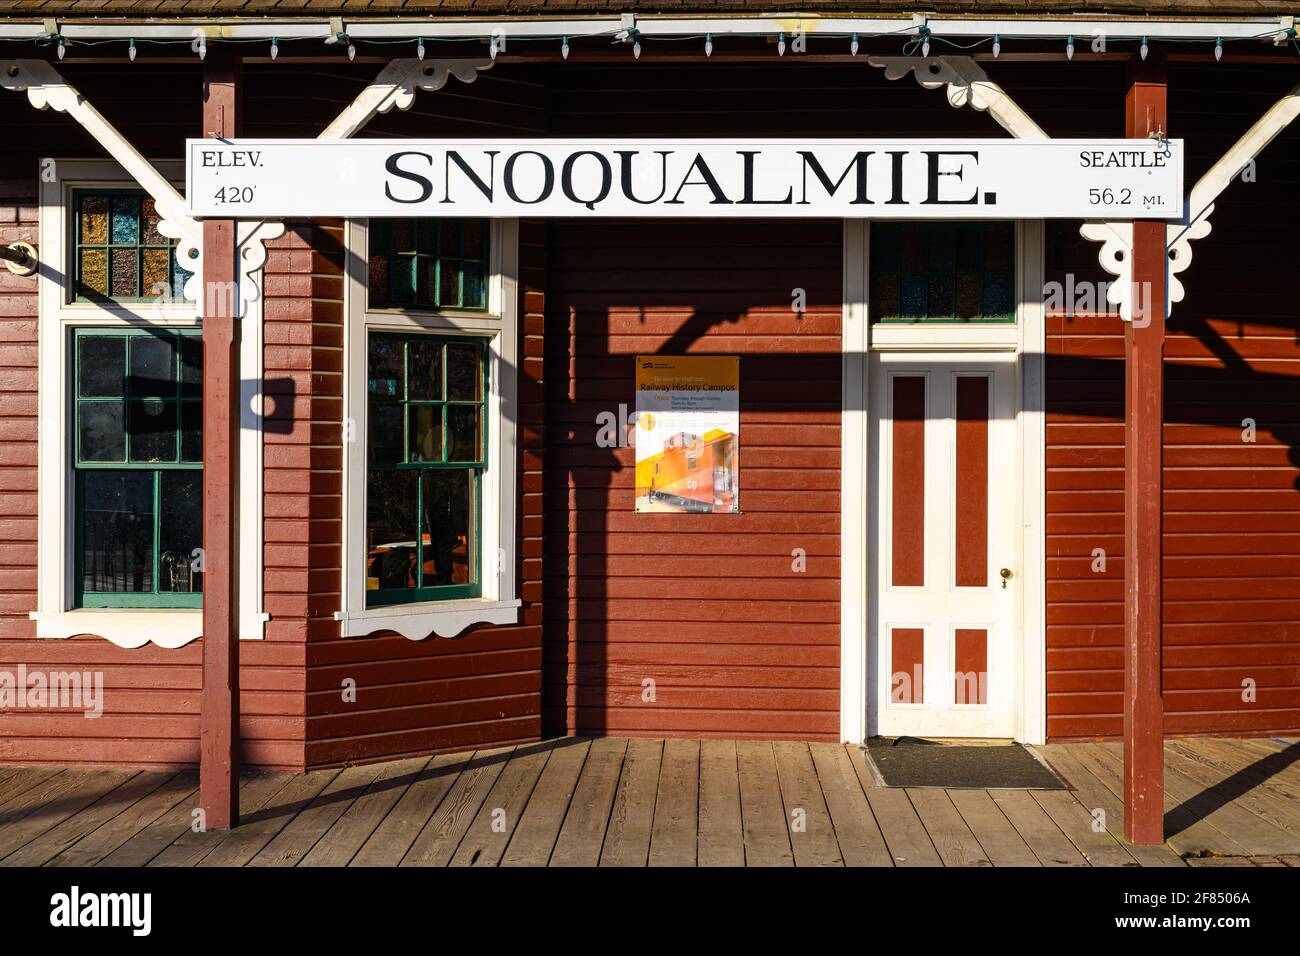 Snoqualmie, WA, USA - 11 avril 2021 ; panneau de chemin de fer historique à la gare de Snoqualmie Washington indiquant 56,2 miles de route vers Seattle Banque D'Images